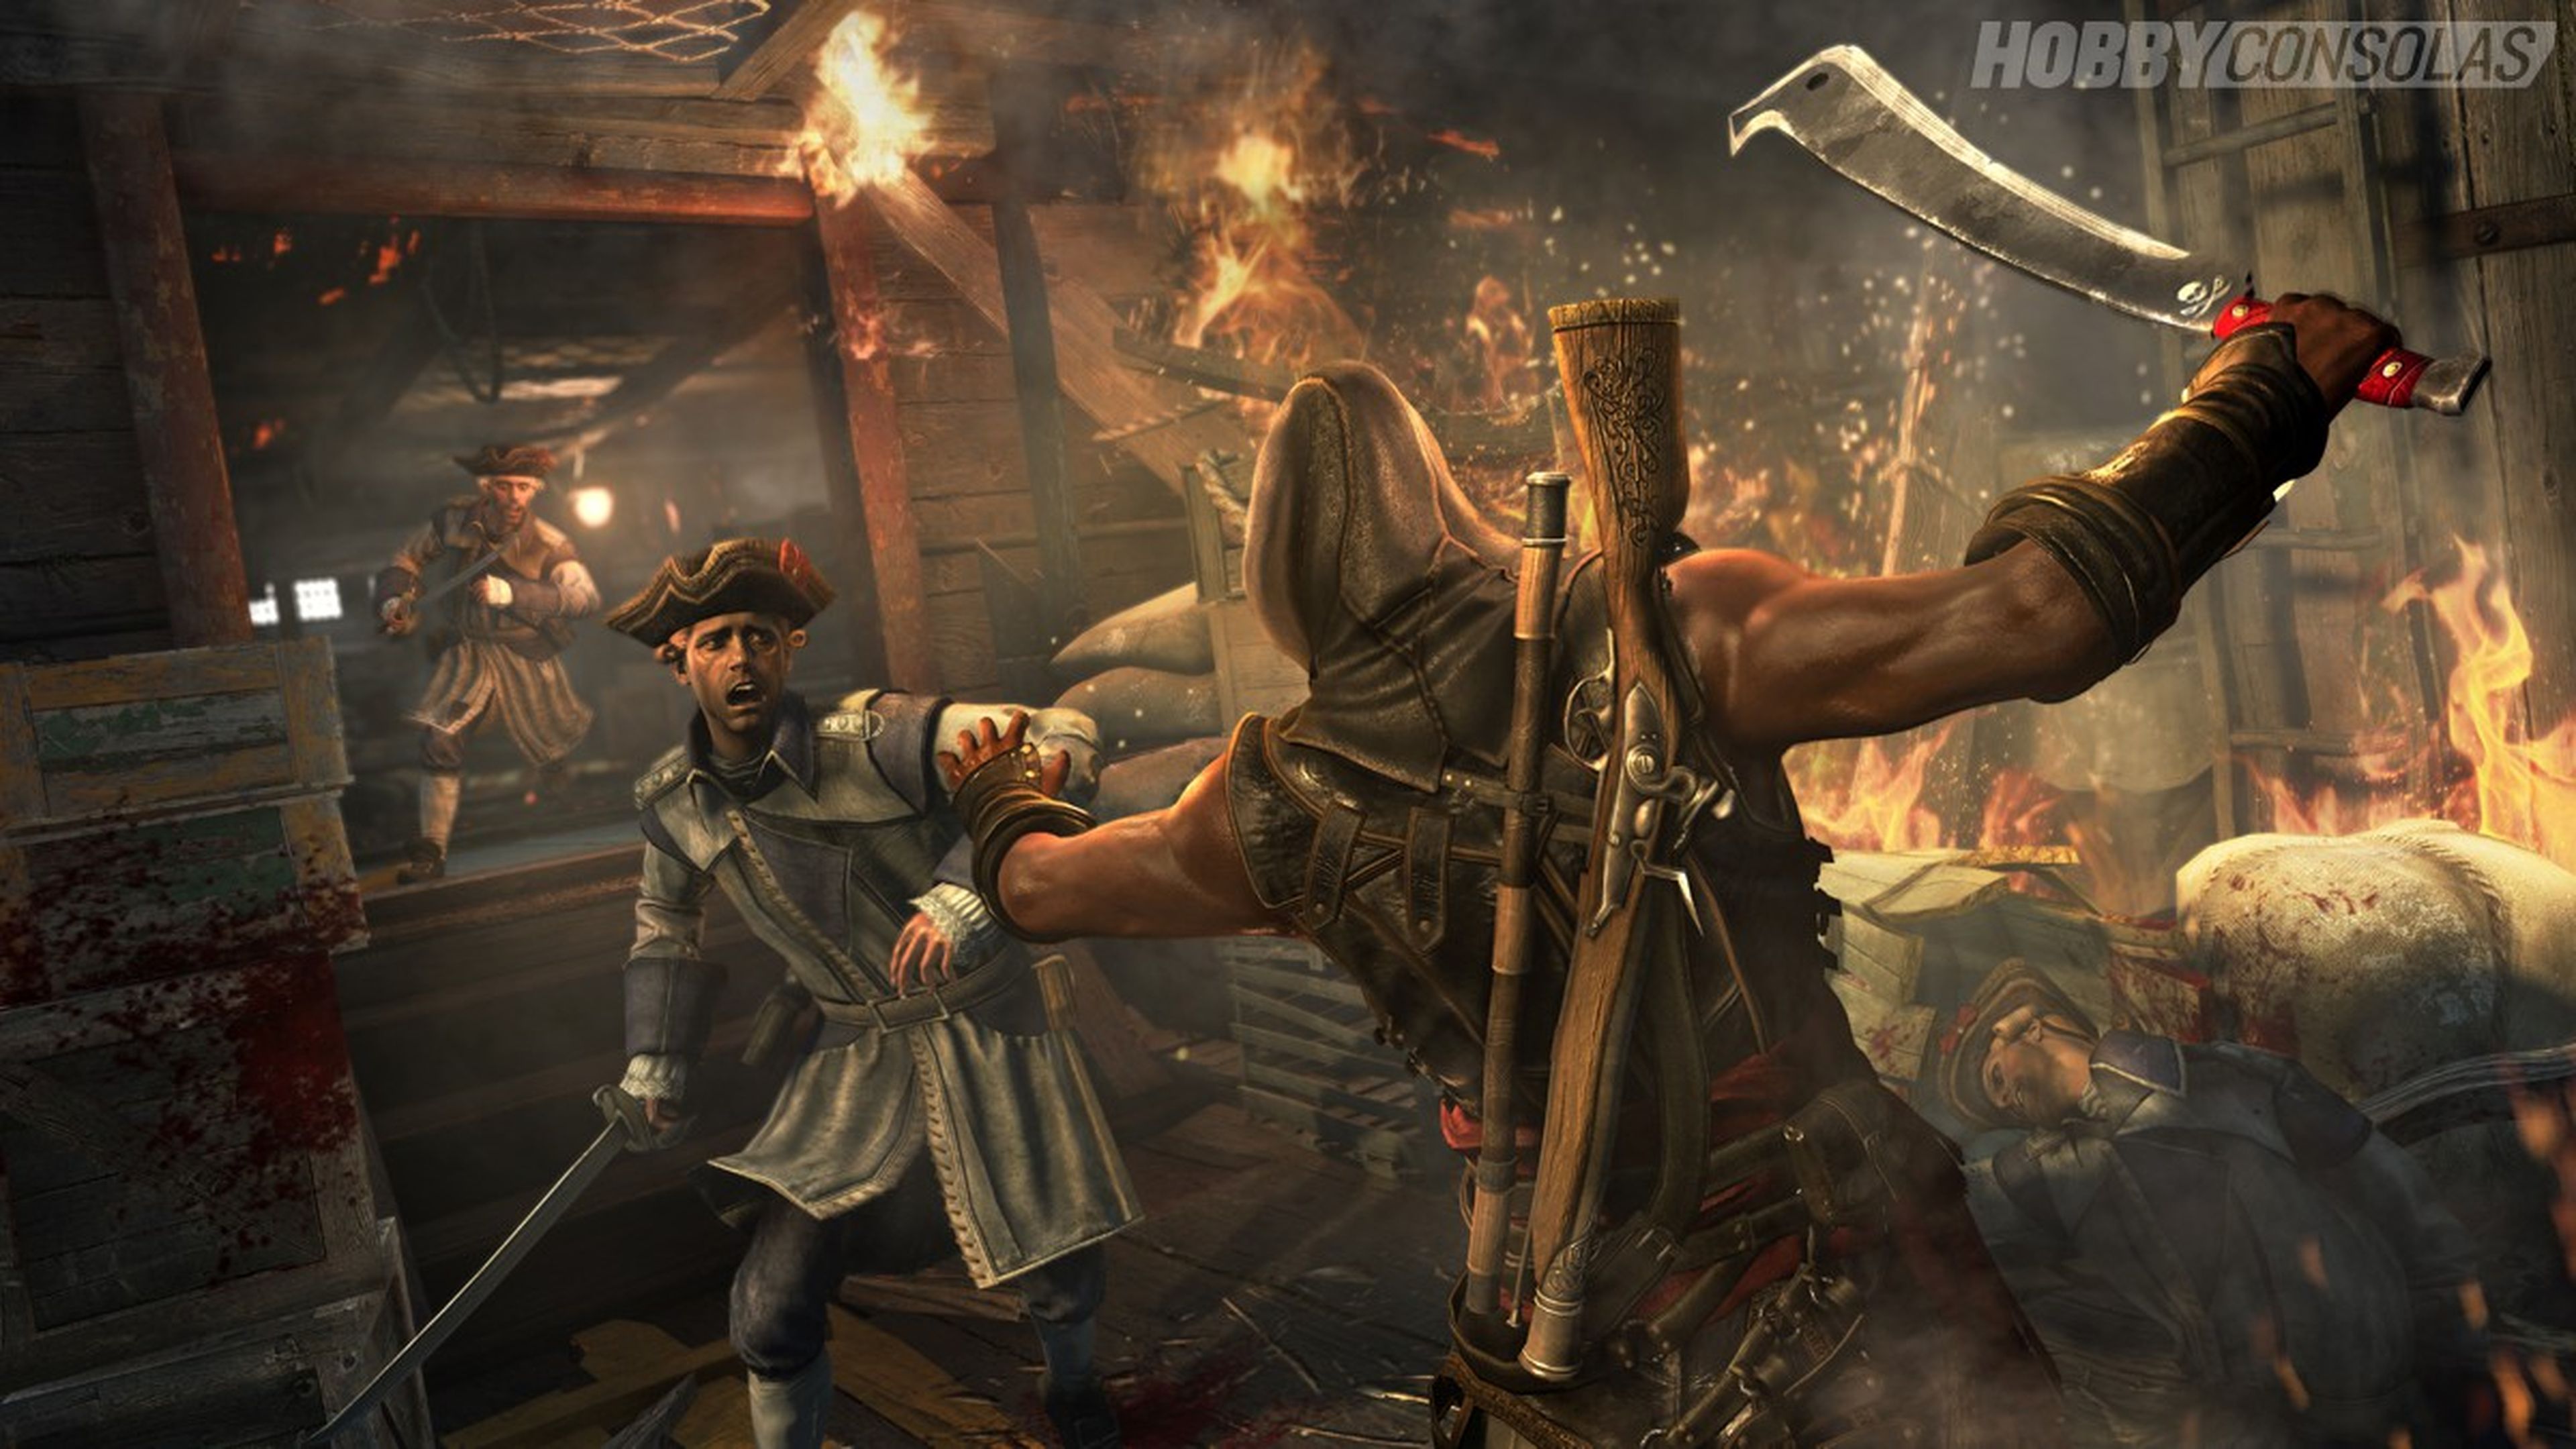 Análisis de Assassin's Creed IV: Grito de libertad